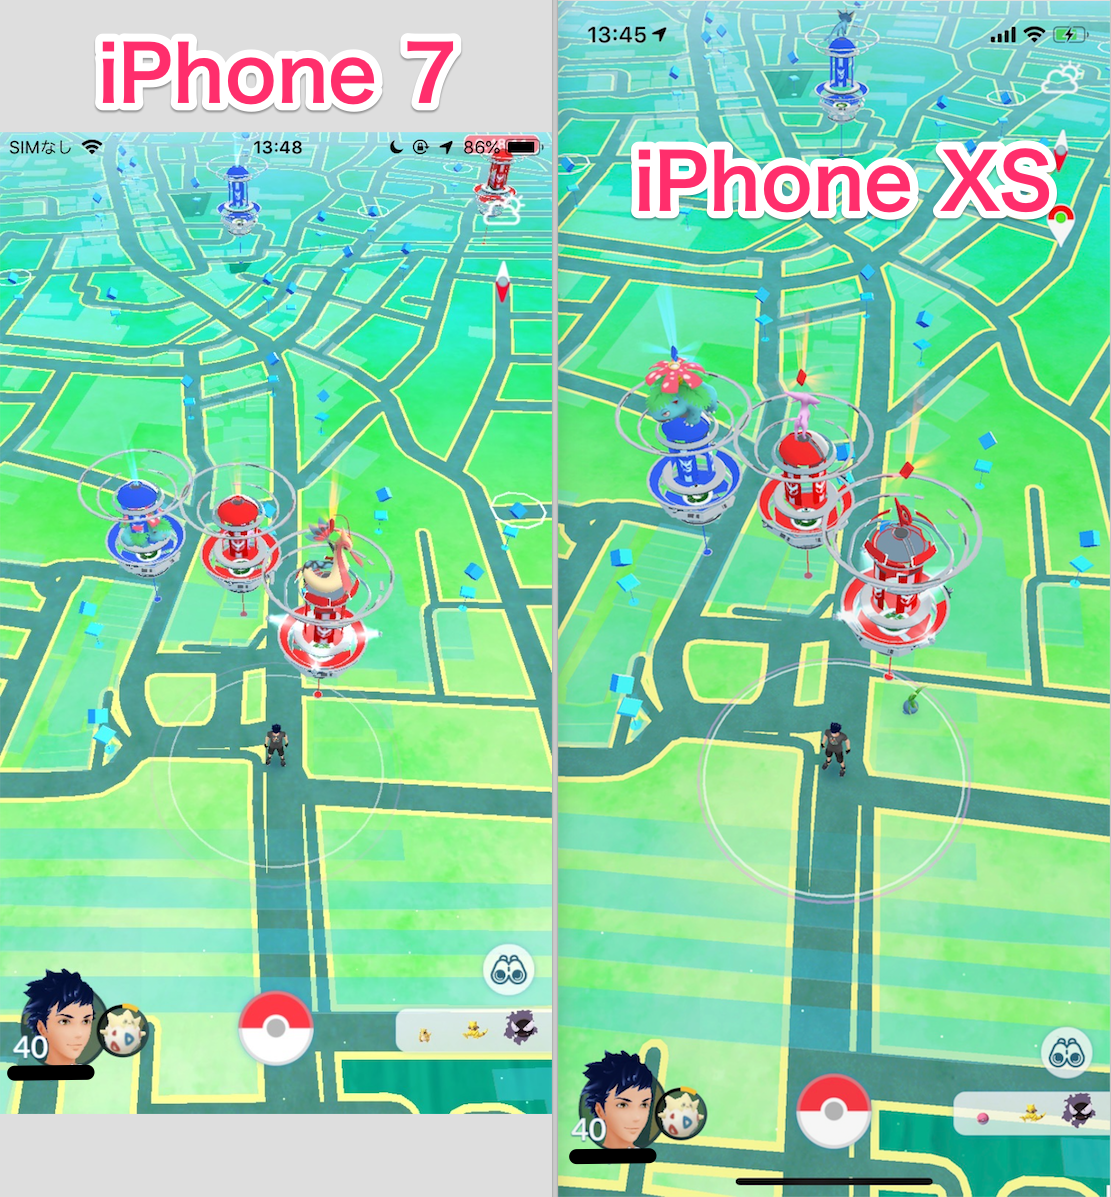 ポケモンgo Iphone Xs Xs Max への機種変更はng フィールドやゲッチャレの画面横幅が狭くなる点に注意 ポケらく